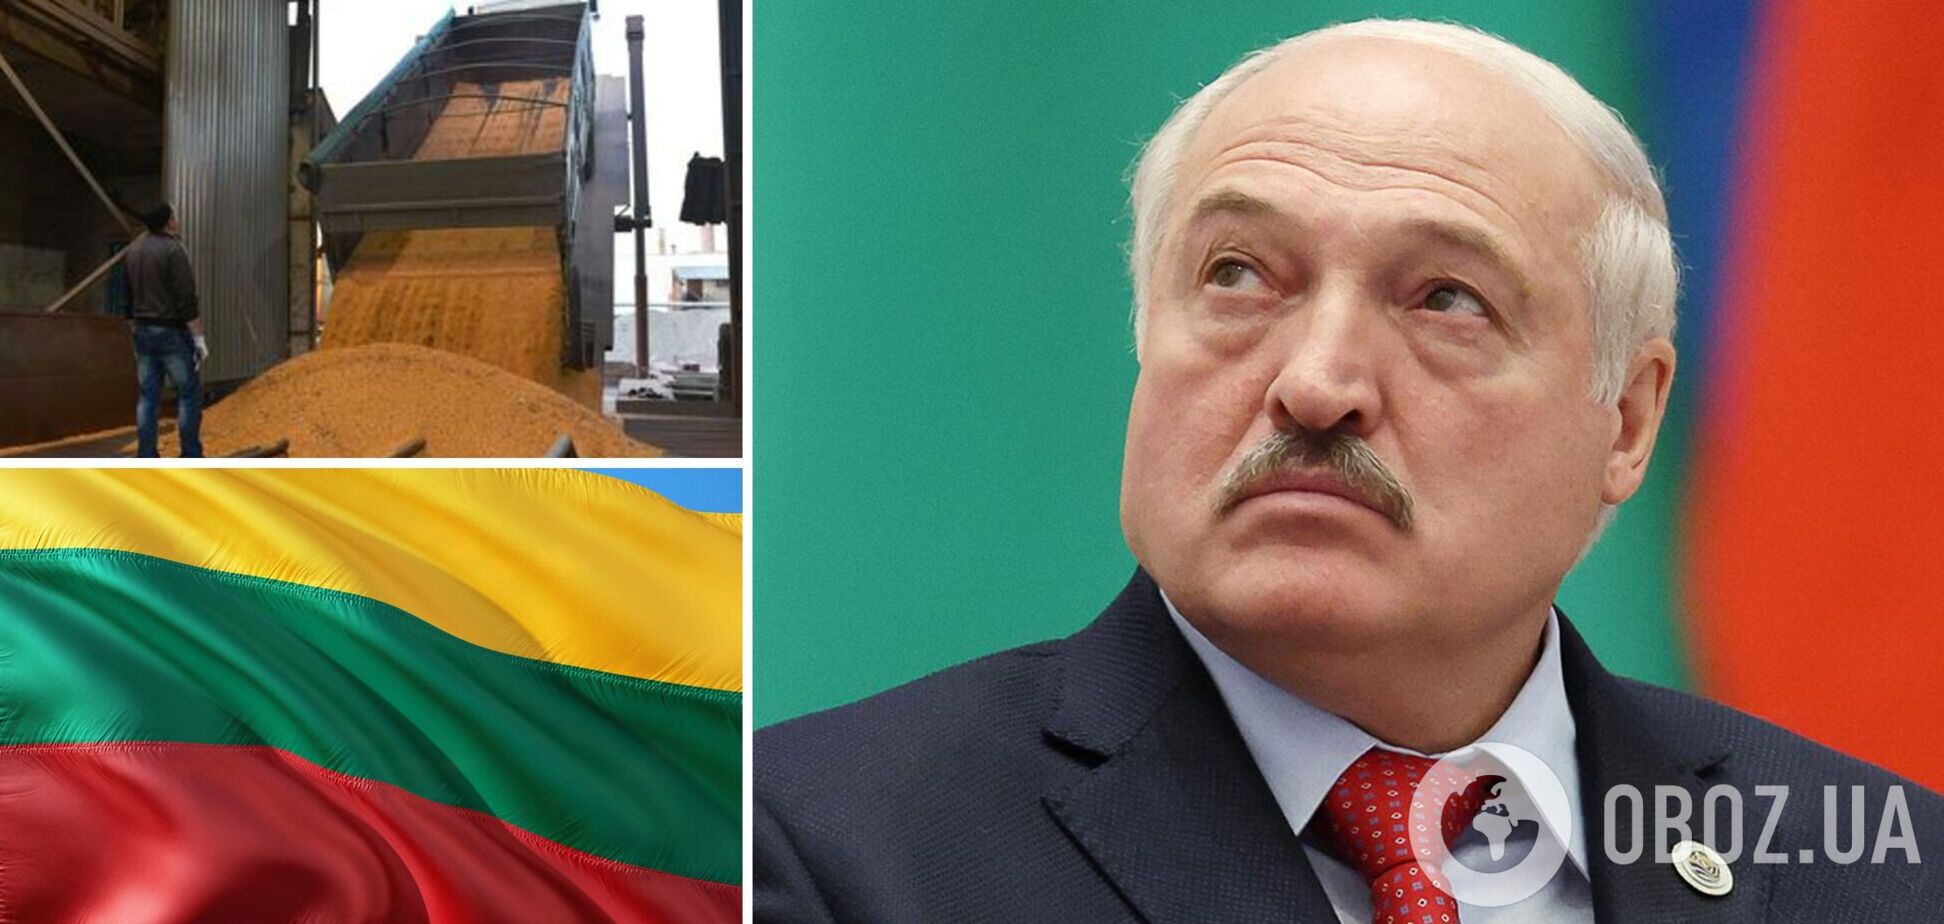 Беларусь без предварительных условий согласилась транспортировать украинское зерно в литовские порты – Reuters